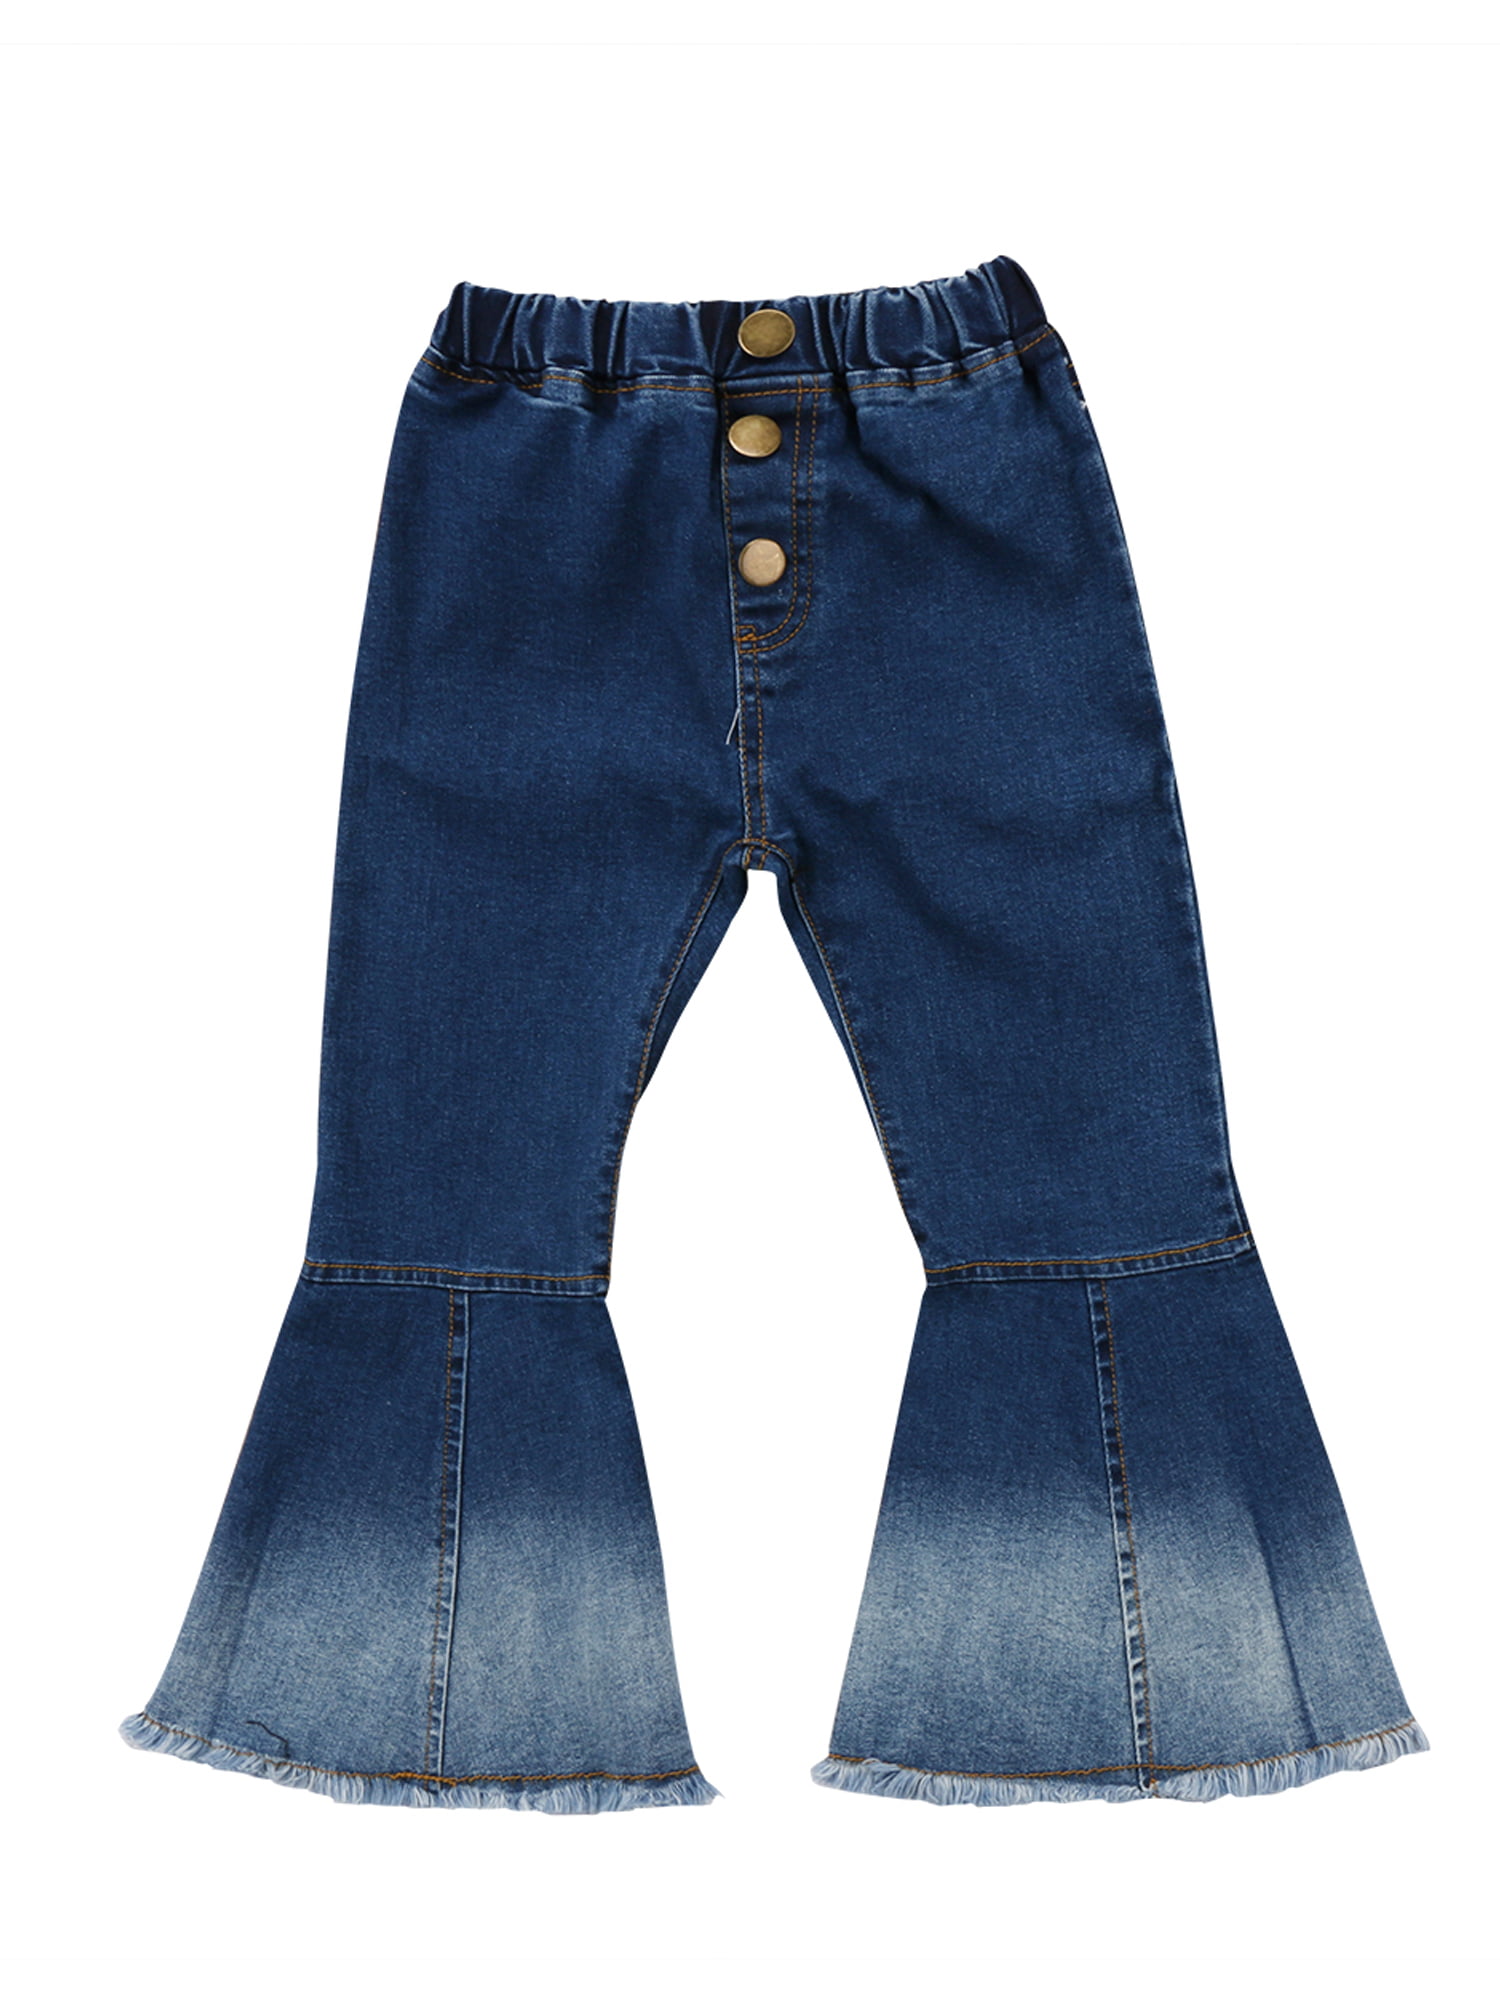 Specialcal Toddler Little Kid Girls Denim Jeans Bell Bottom Flare Pants Leggings Trousers